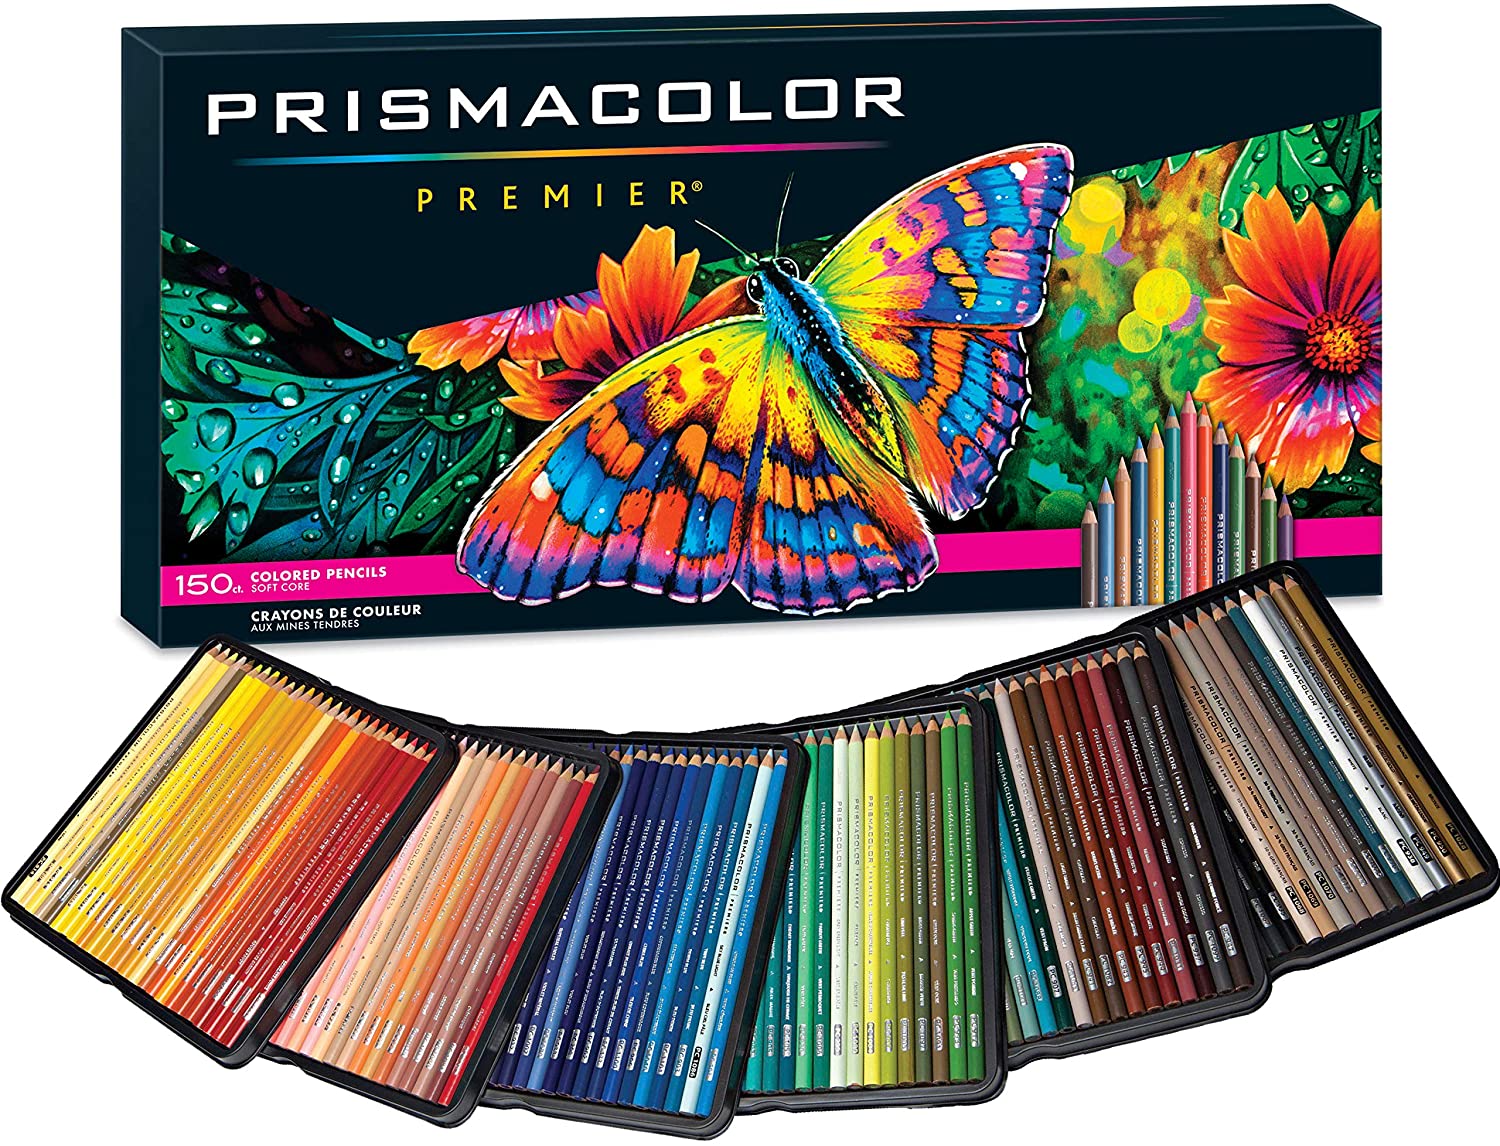 Prismacolor Premier 软芯彩色铅笔 150 支装